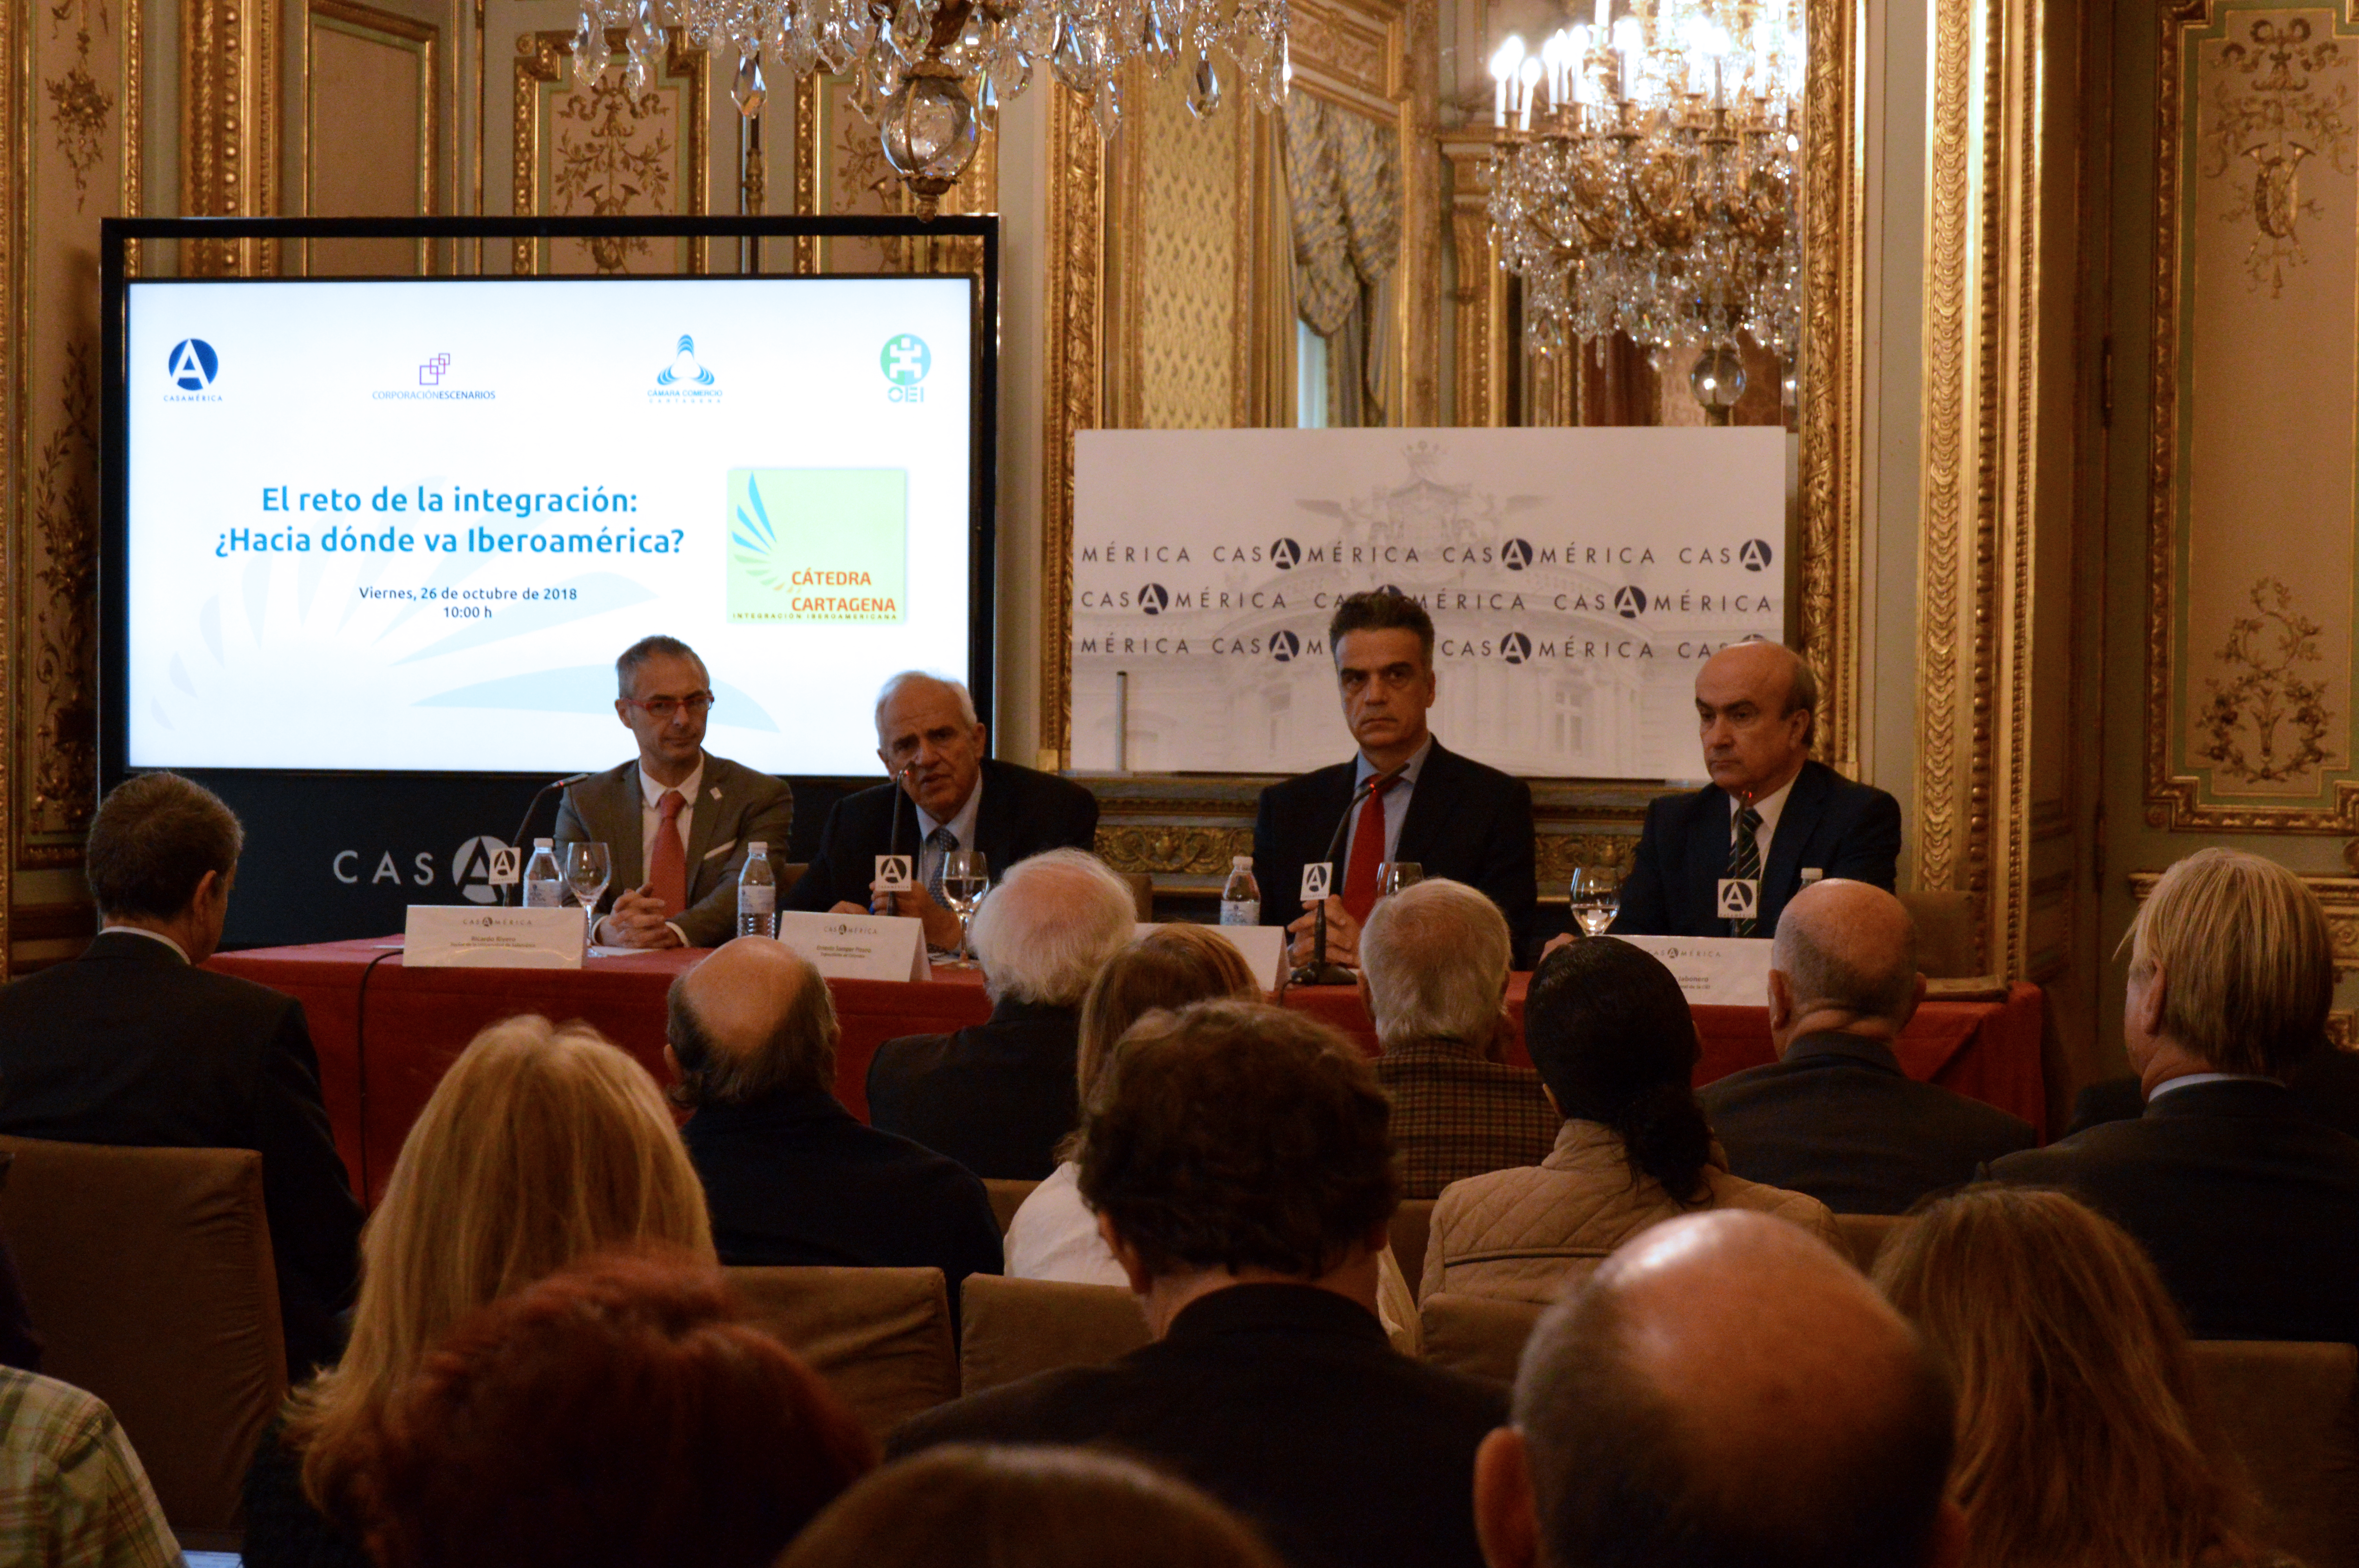 La OEI presenta en Madrid la Cátedra Cartagena en Integración Iberoamericana